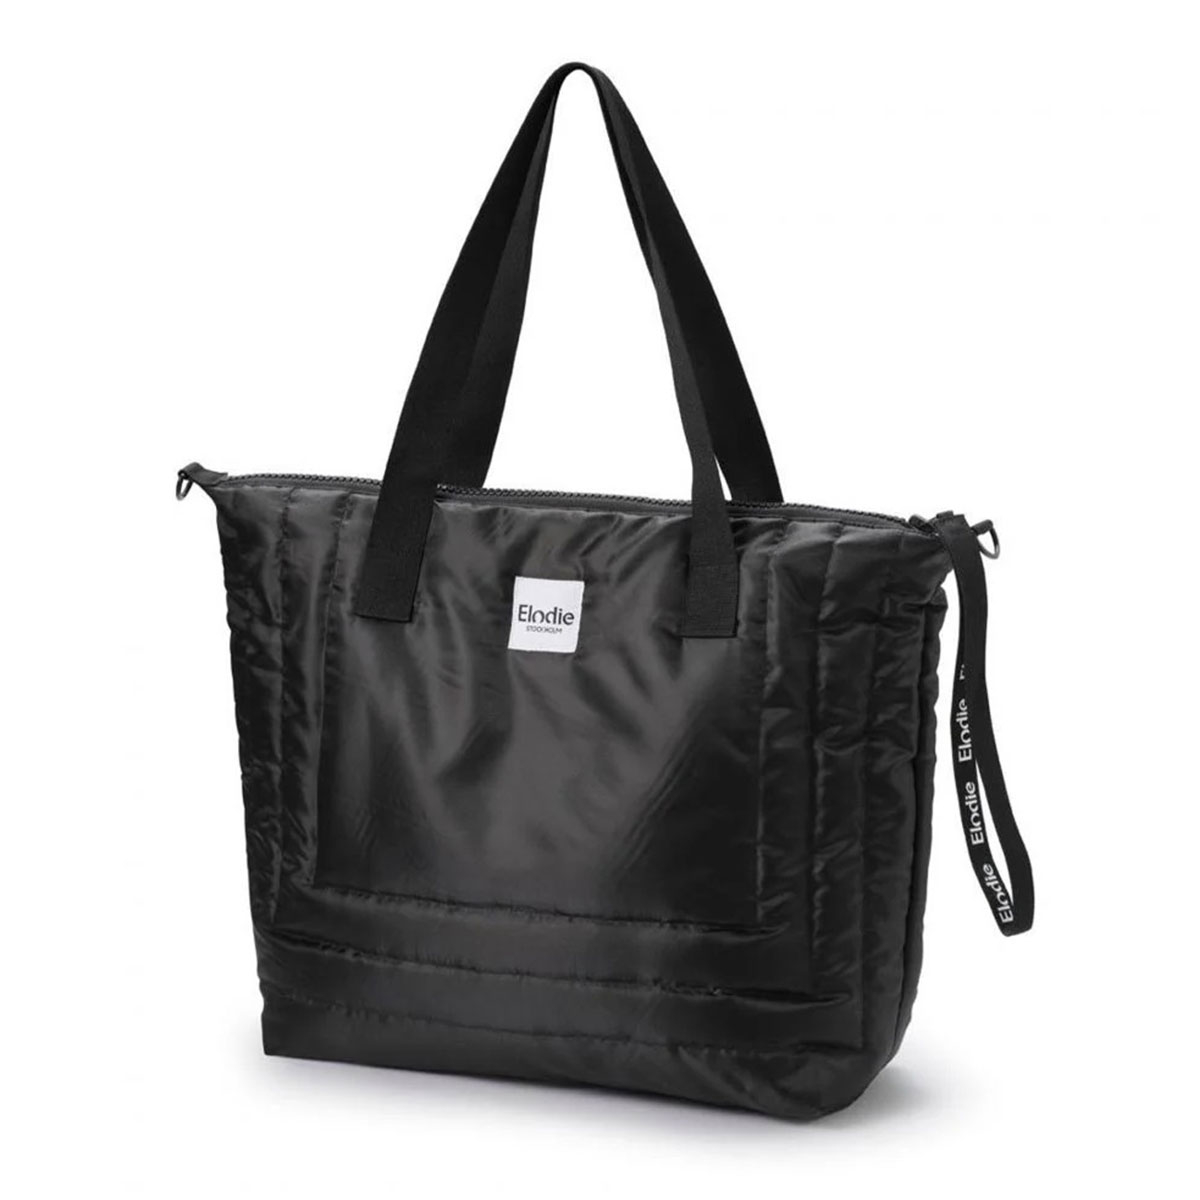 Τσάντα Αλλαξιέρα Elodie Quilted Black BR77416